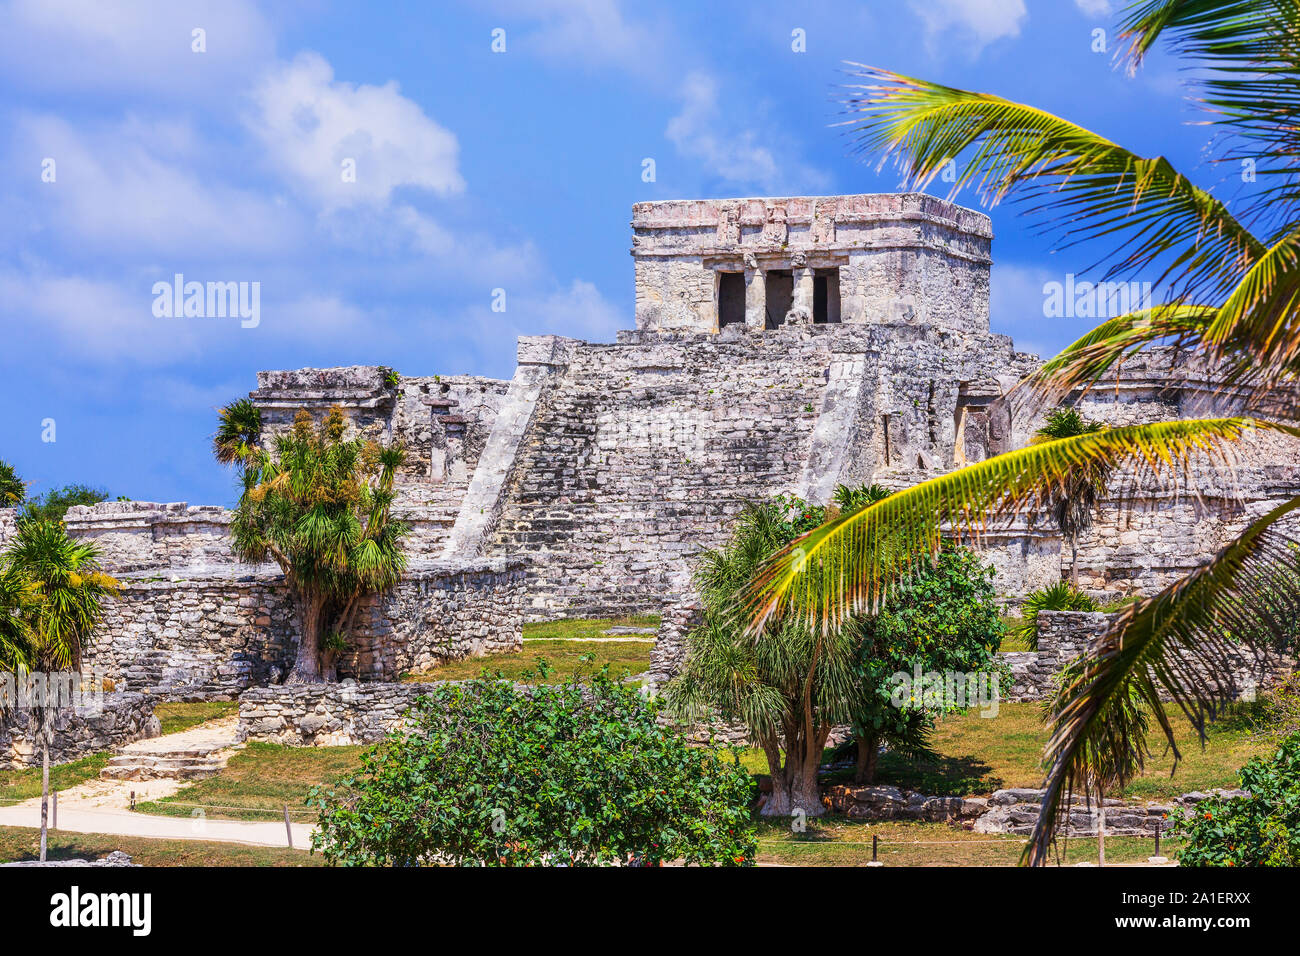 En Tulum, México. El Castillo (Castillo) el templo principal de la ciudad maya. Foto de stock